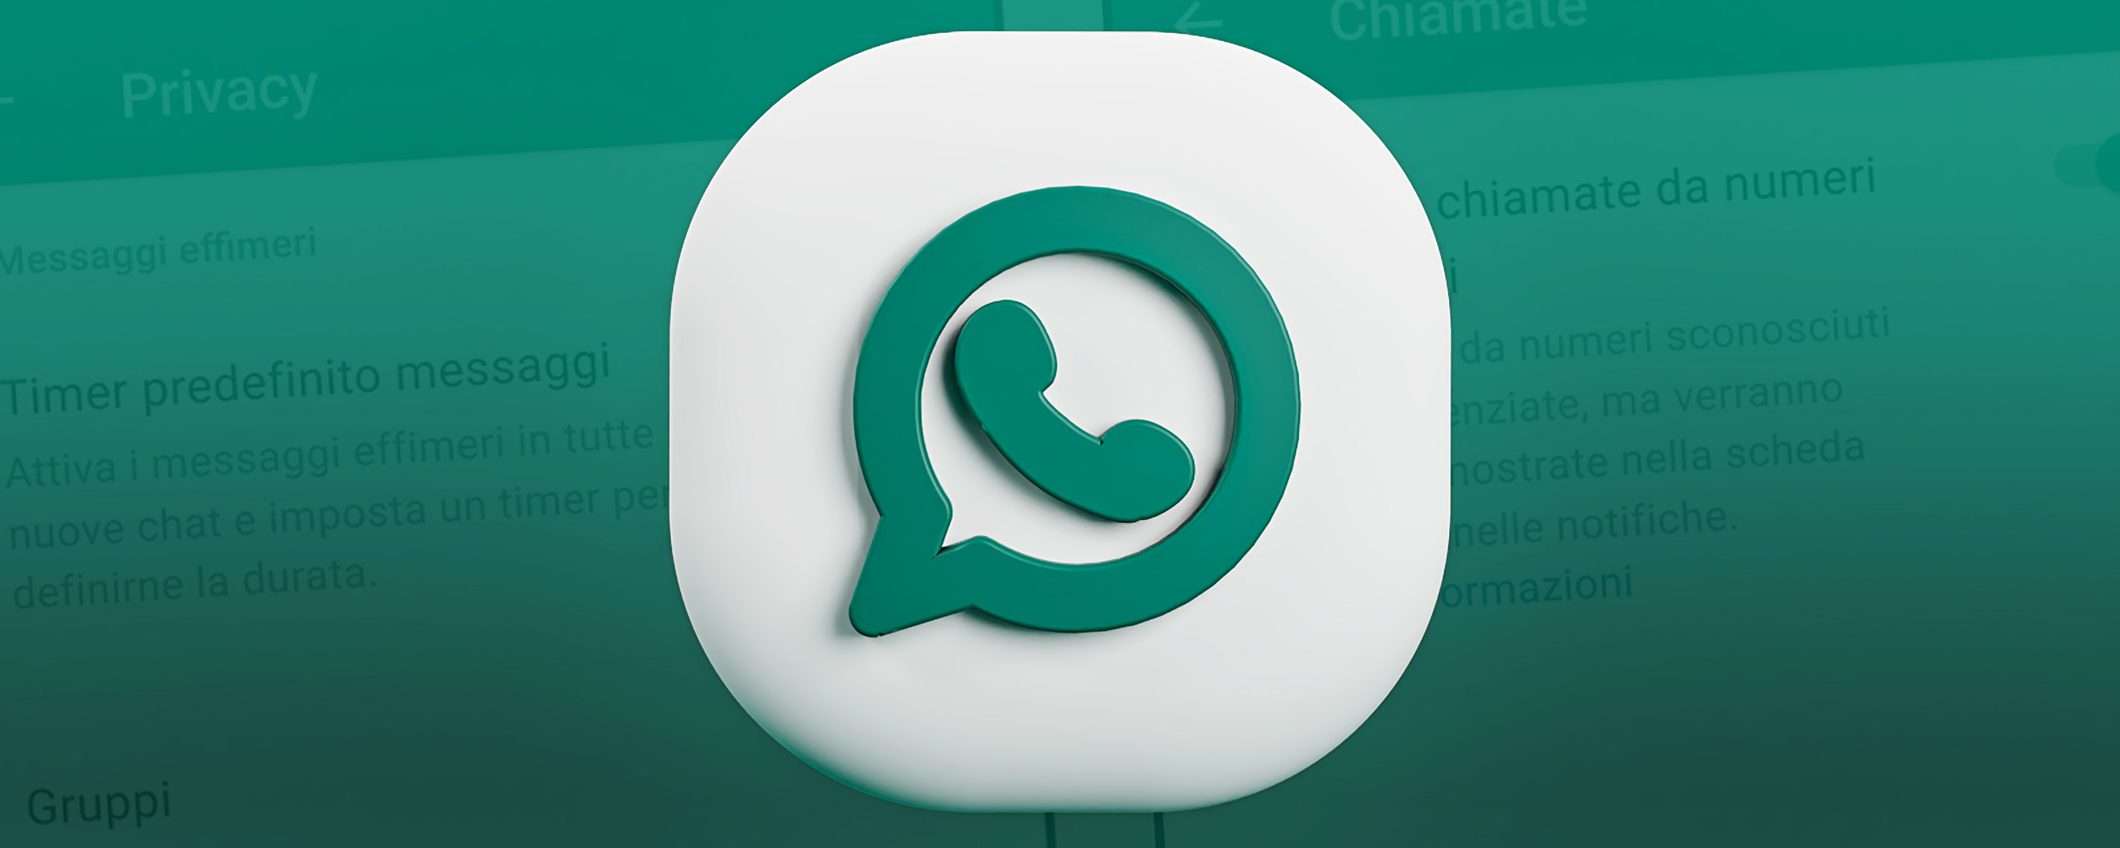 WhatsApp, novità: silenzia chiamate e controllo privacy